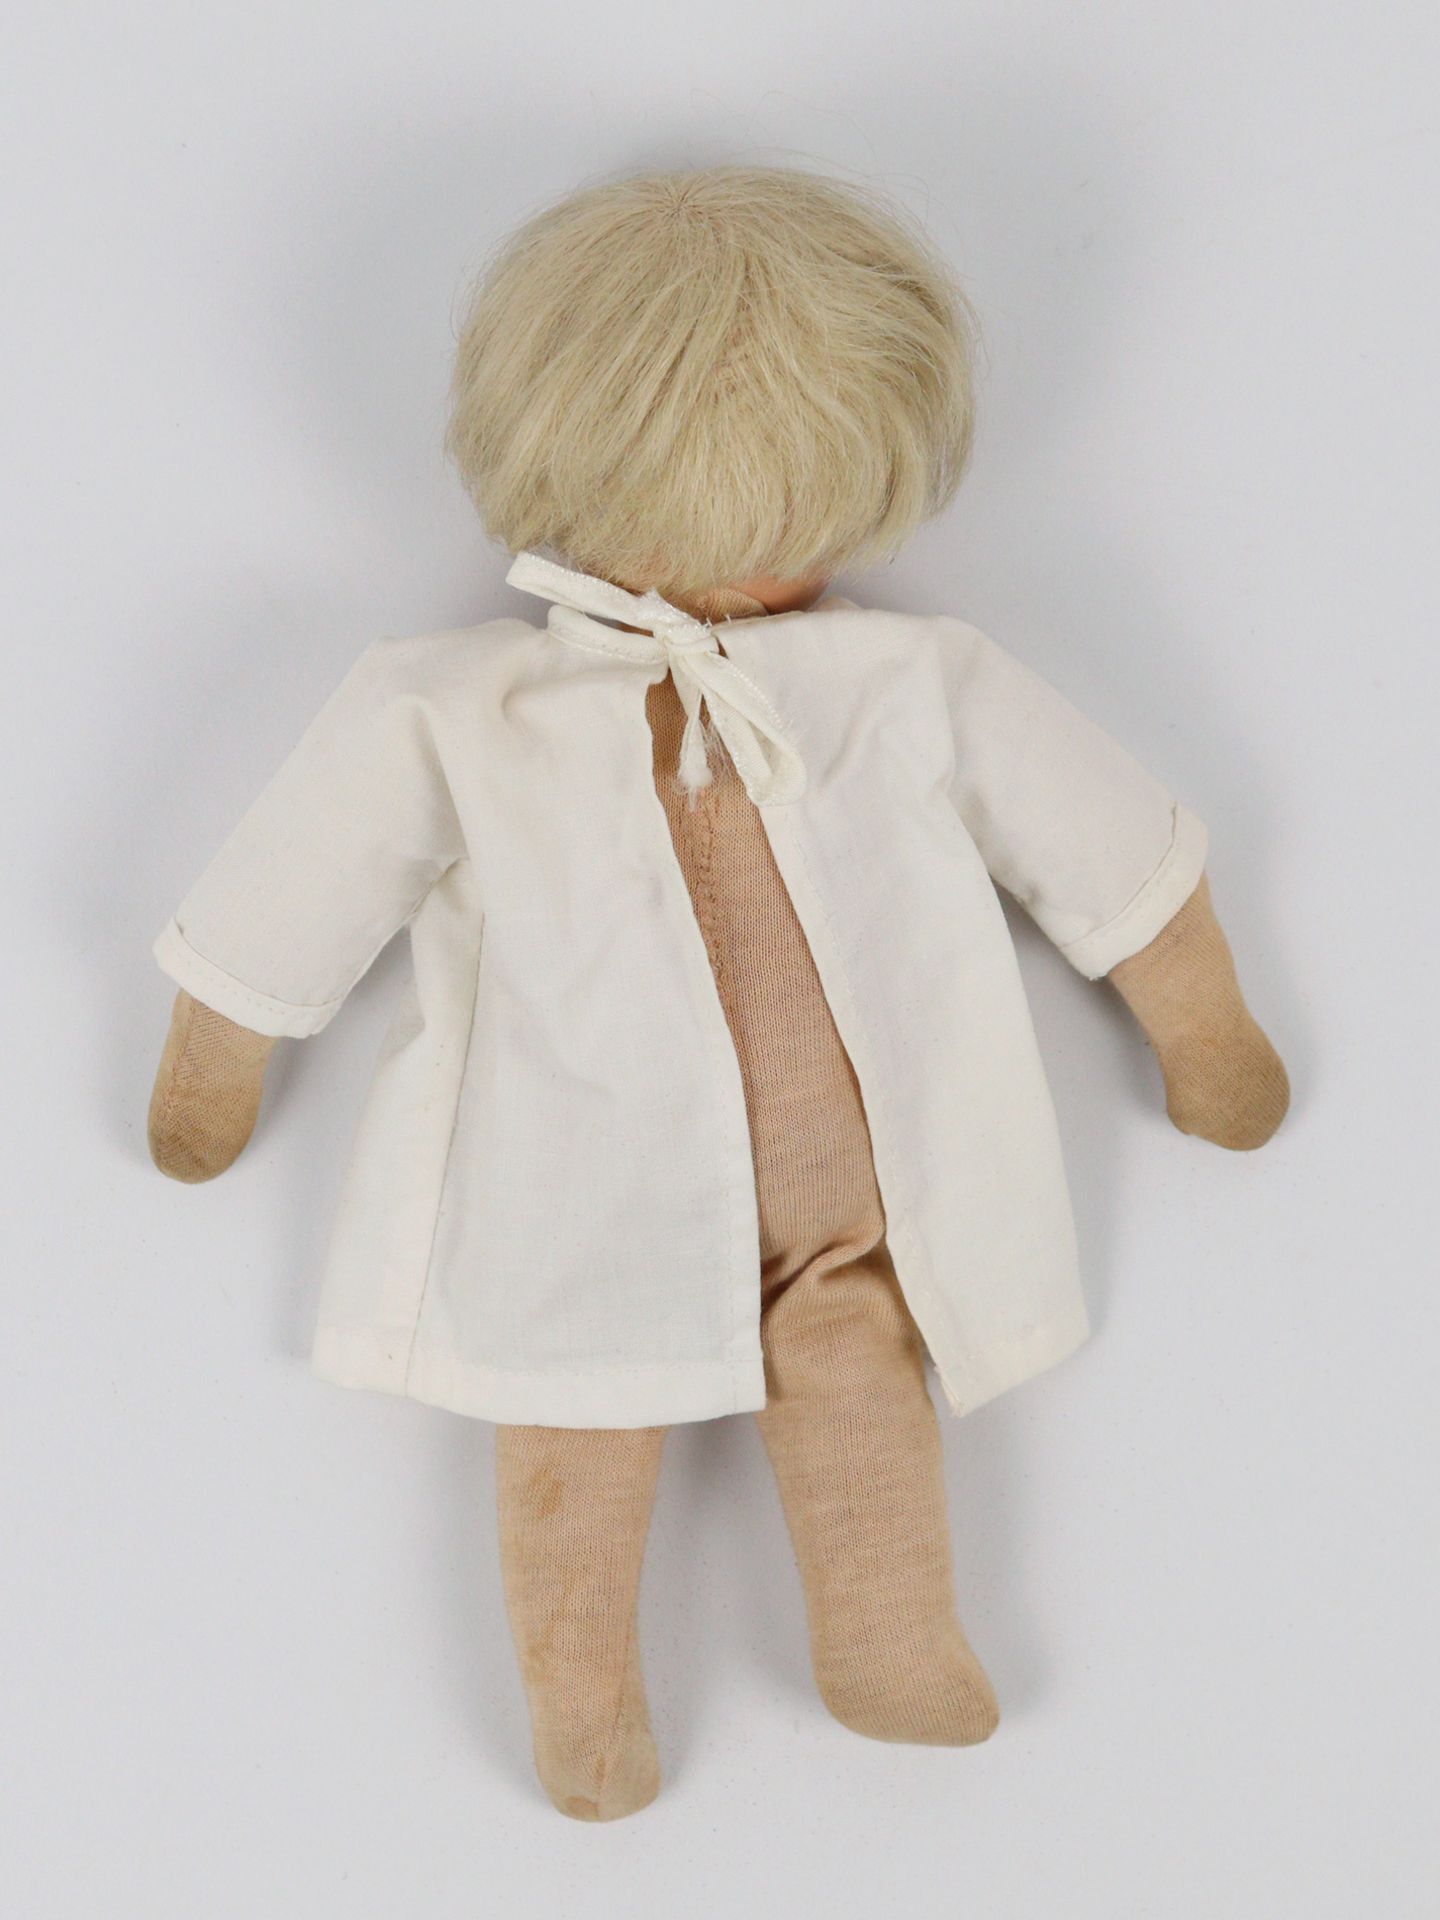 Käthe Kruse - Puppe - Image 4 of 4